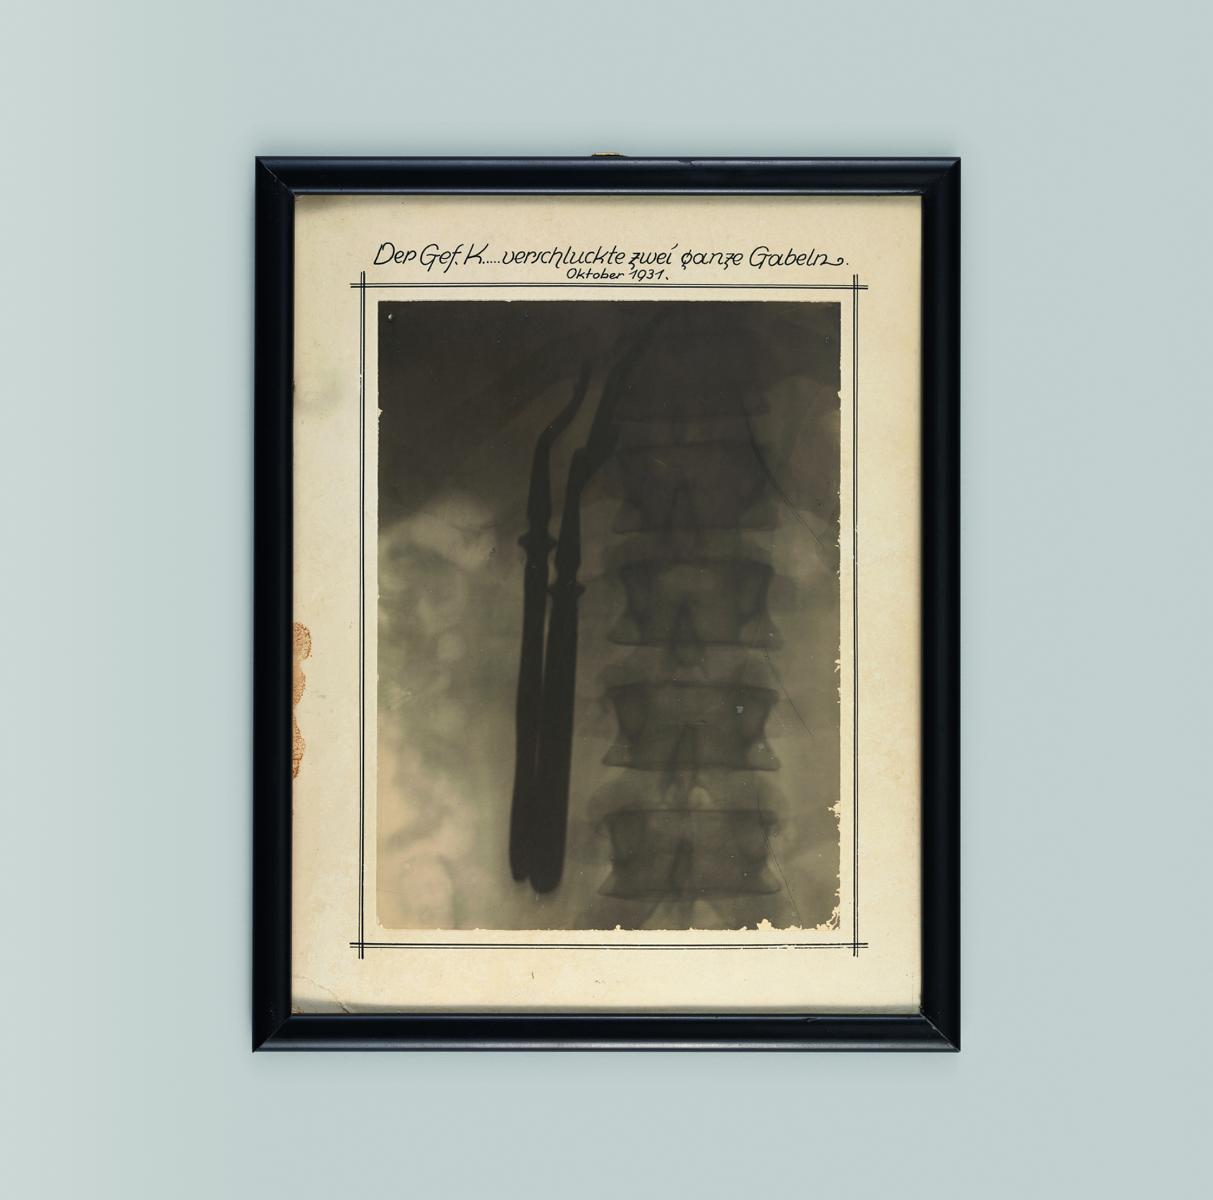 Bild einer eingerahmten Röntgenaufnahme, auf der die Wirbelsäule eines Gefangenen und daneben zwei sich dunkel abzeichnende Gabeln zu sehen sind, dazu die Überschrift "Der Gefangene K. verschluckte zwei ganze Gabeln, Oktober 1931"